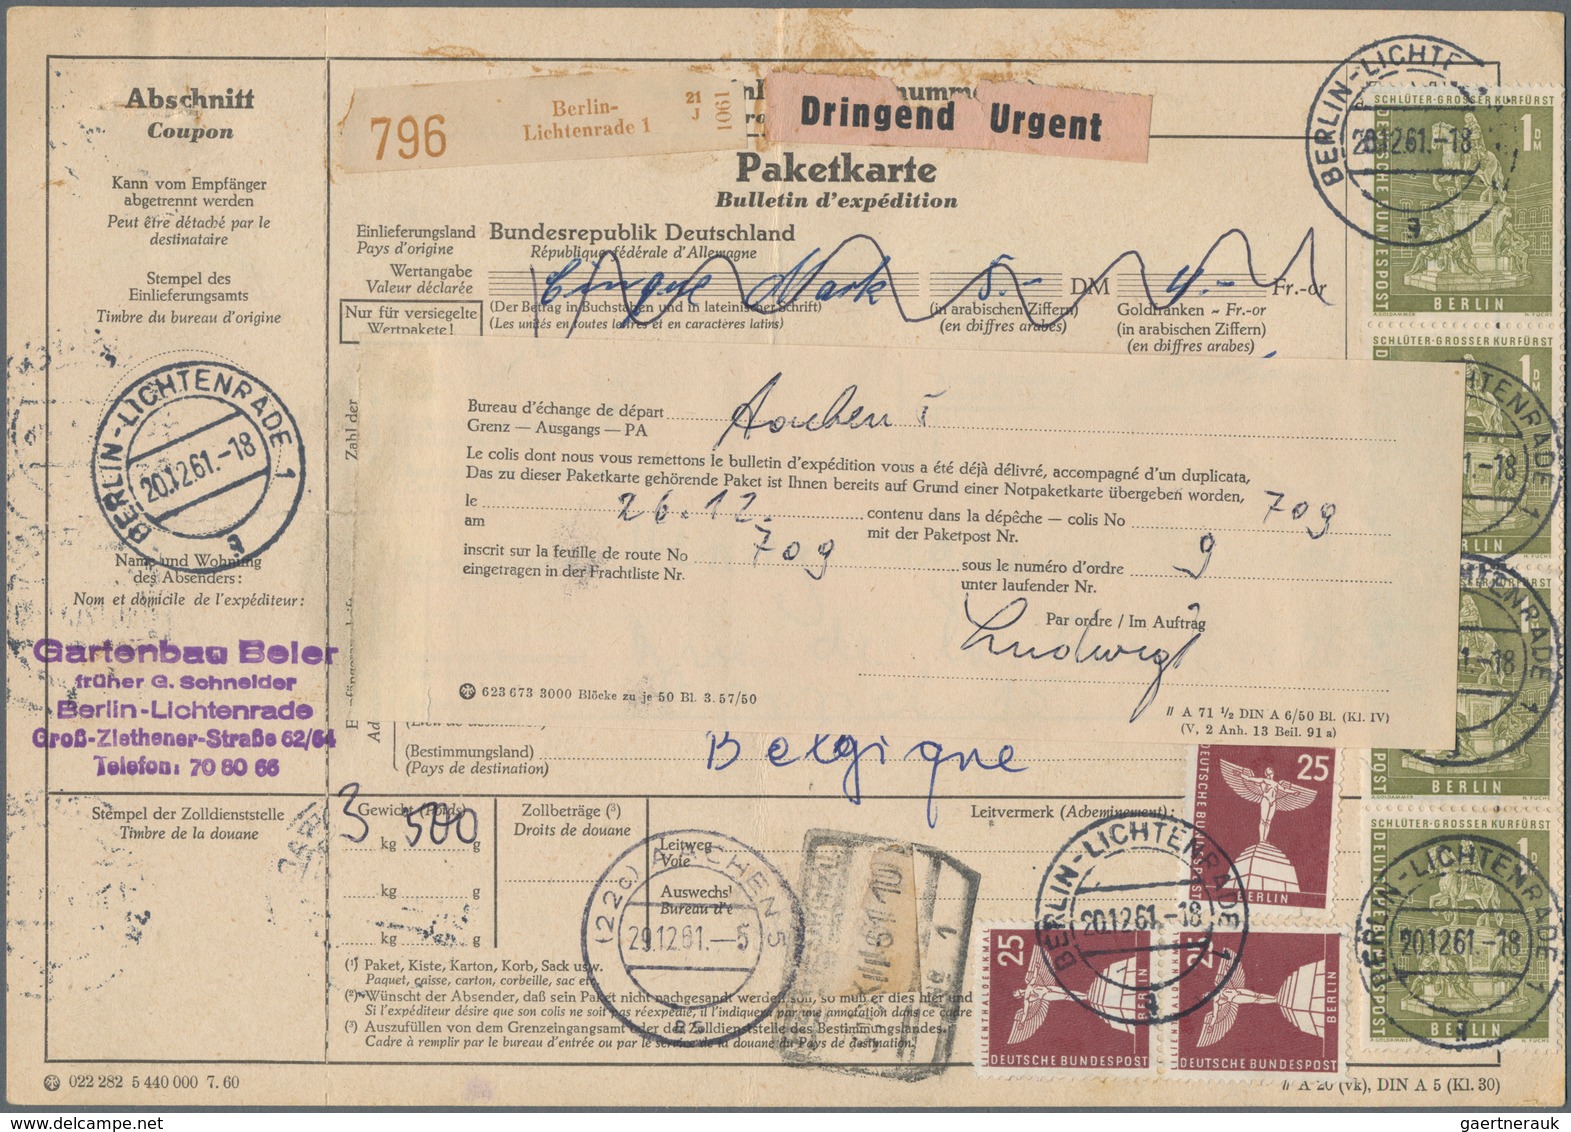 Berlin: 1947/1982, umfassende, sehr inhaltsreich und hochwertig besetzte Sammlung von ca. 350 Briefe